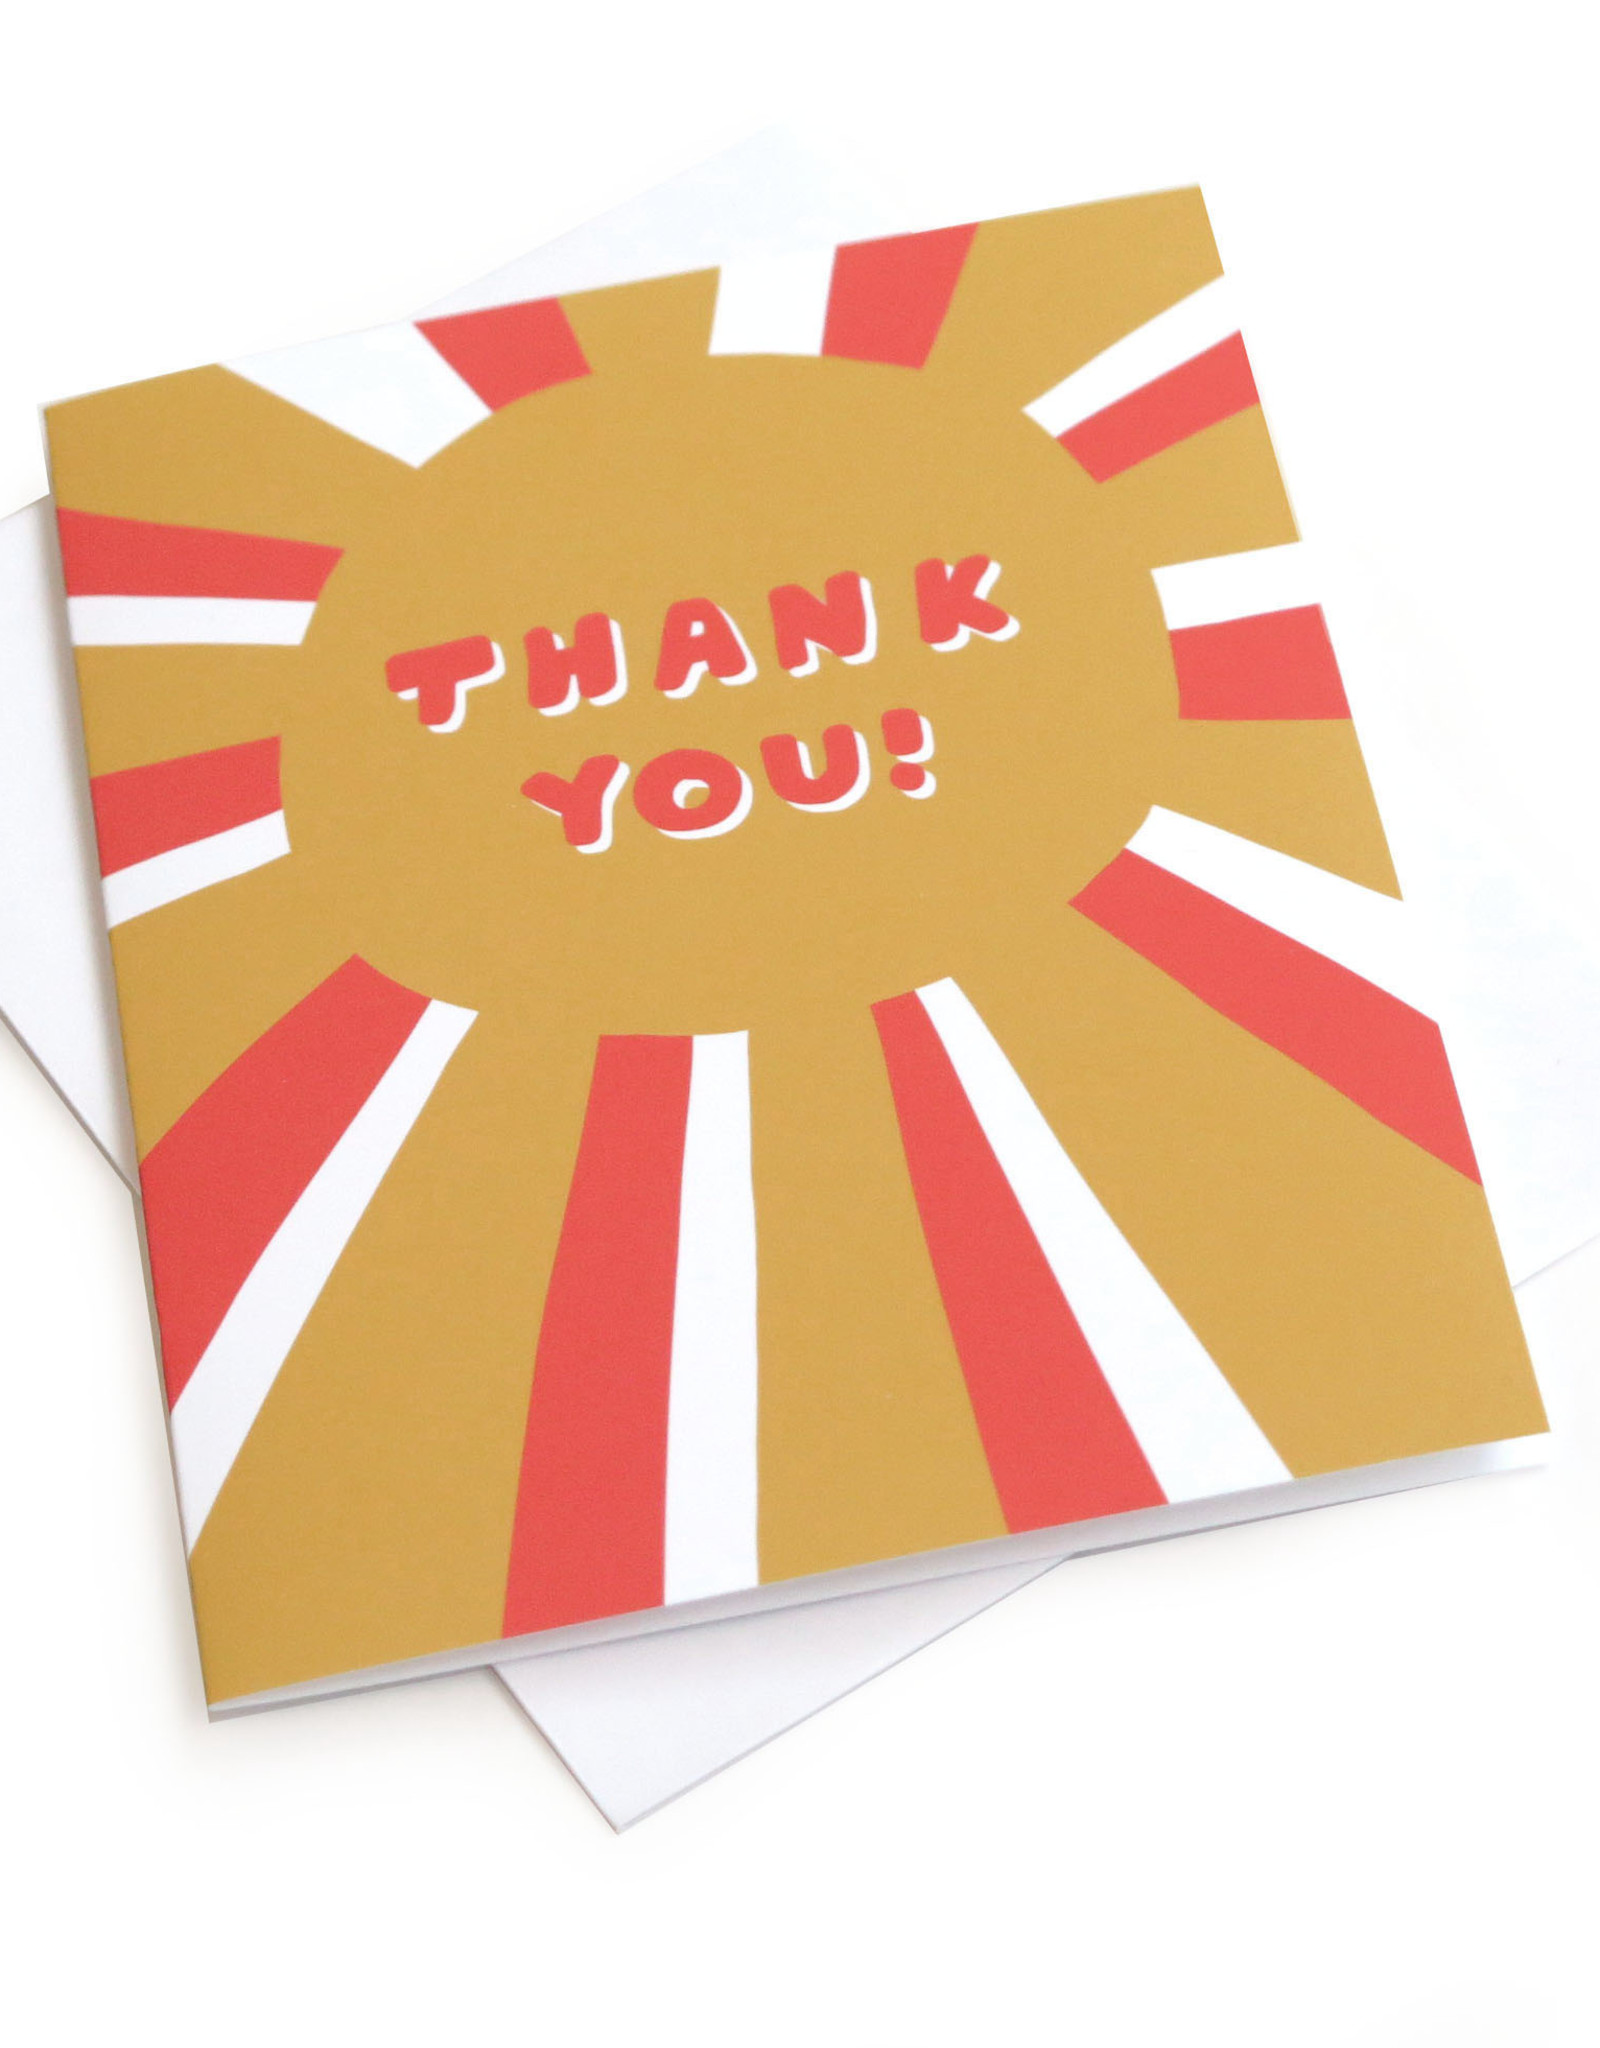 Konoco "Thank You!" Card by Konoco